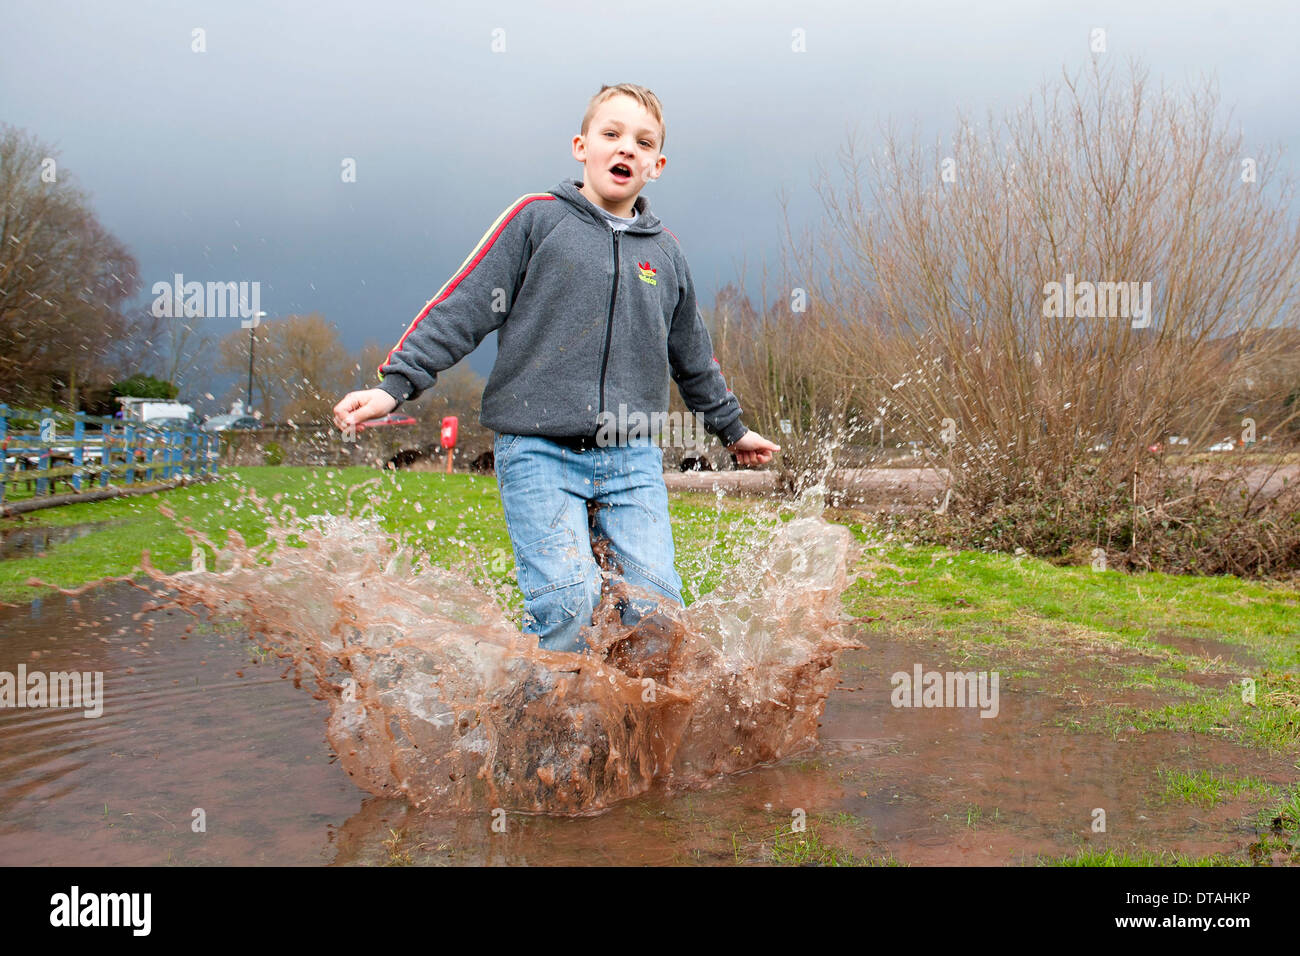 Un jeune garçon profitant du temps pluvieux de sauter dans une flaque d'eau et les projections d'eau. Banque D'Images